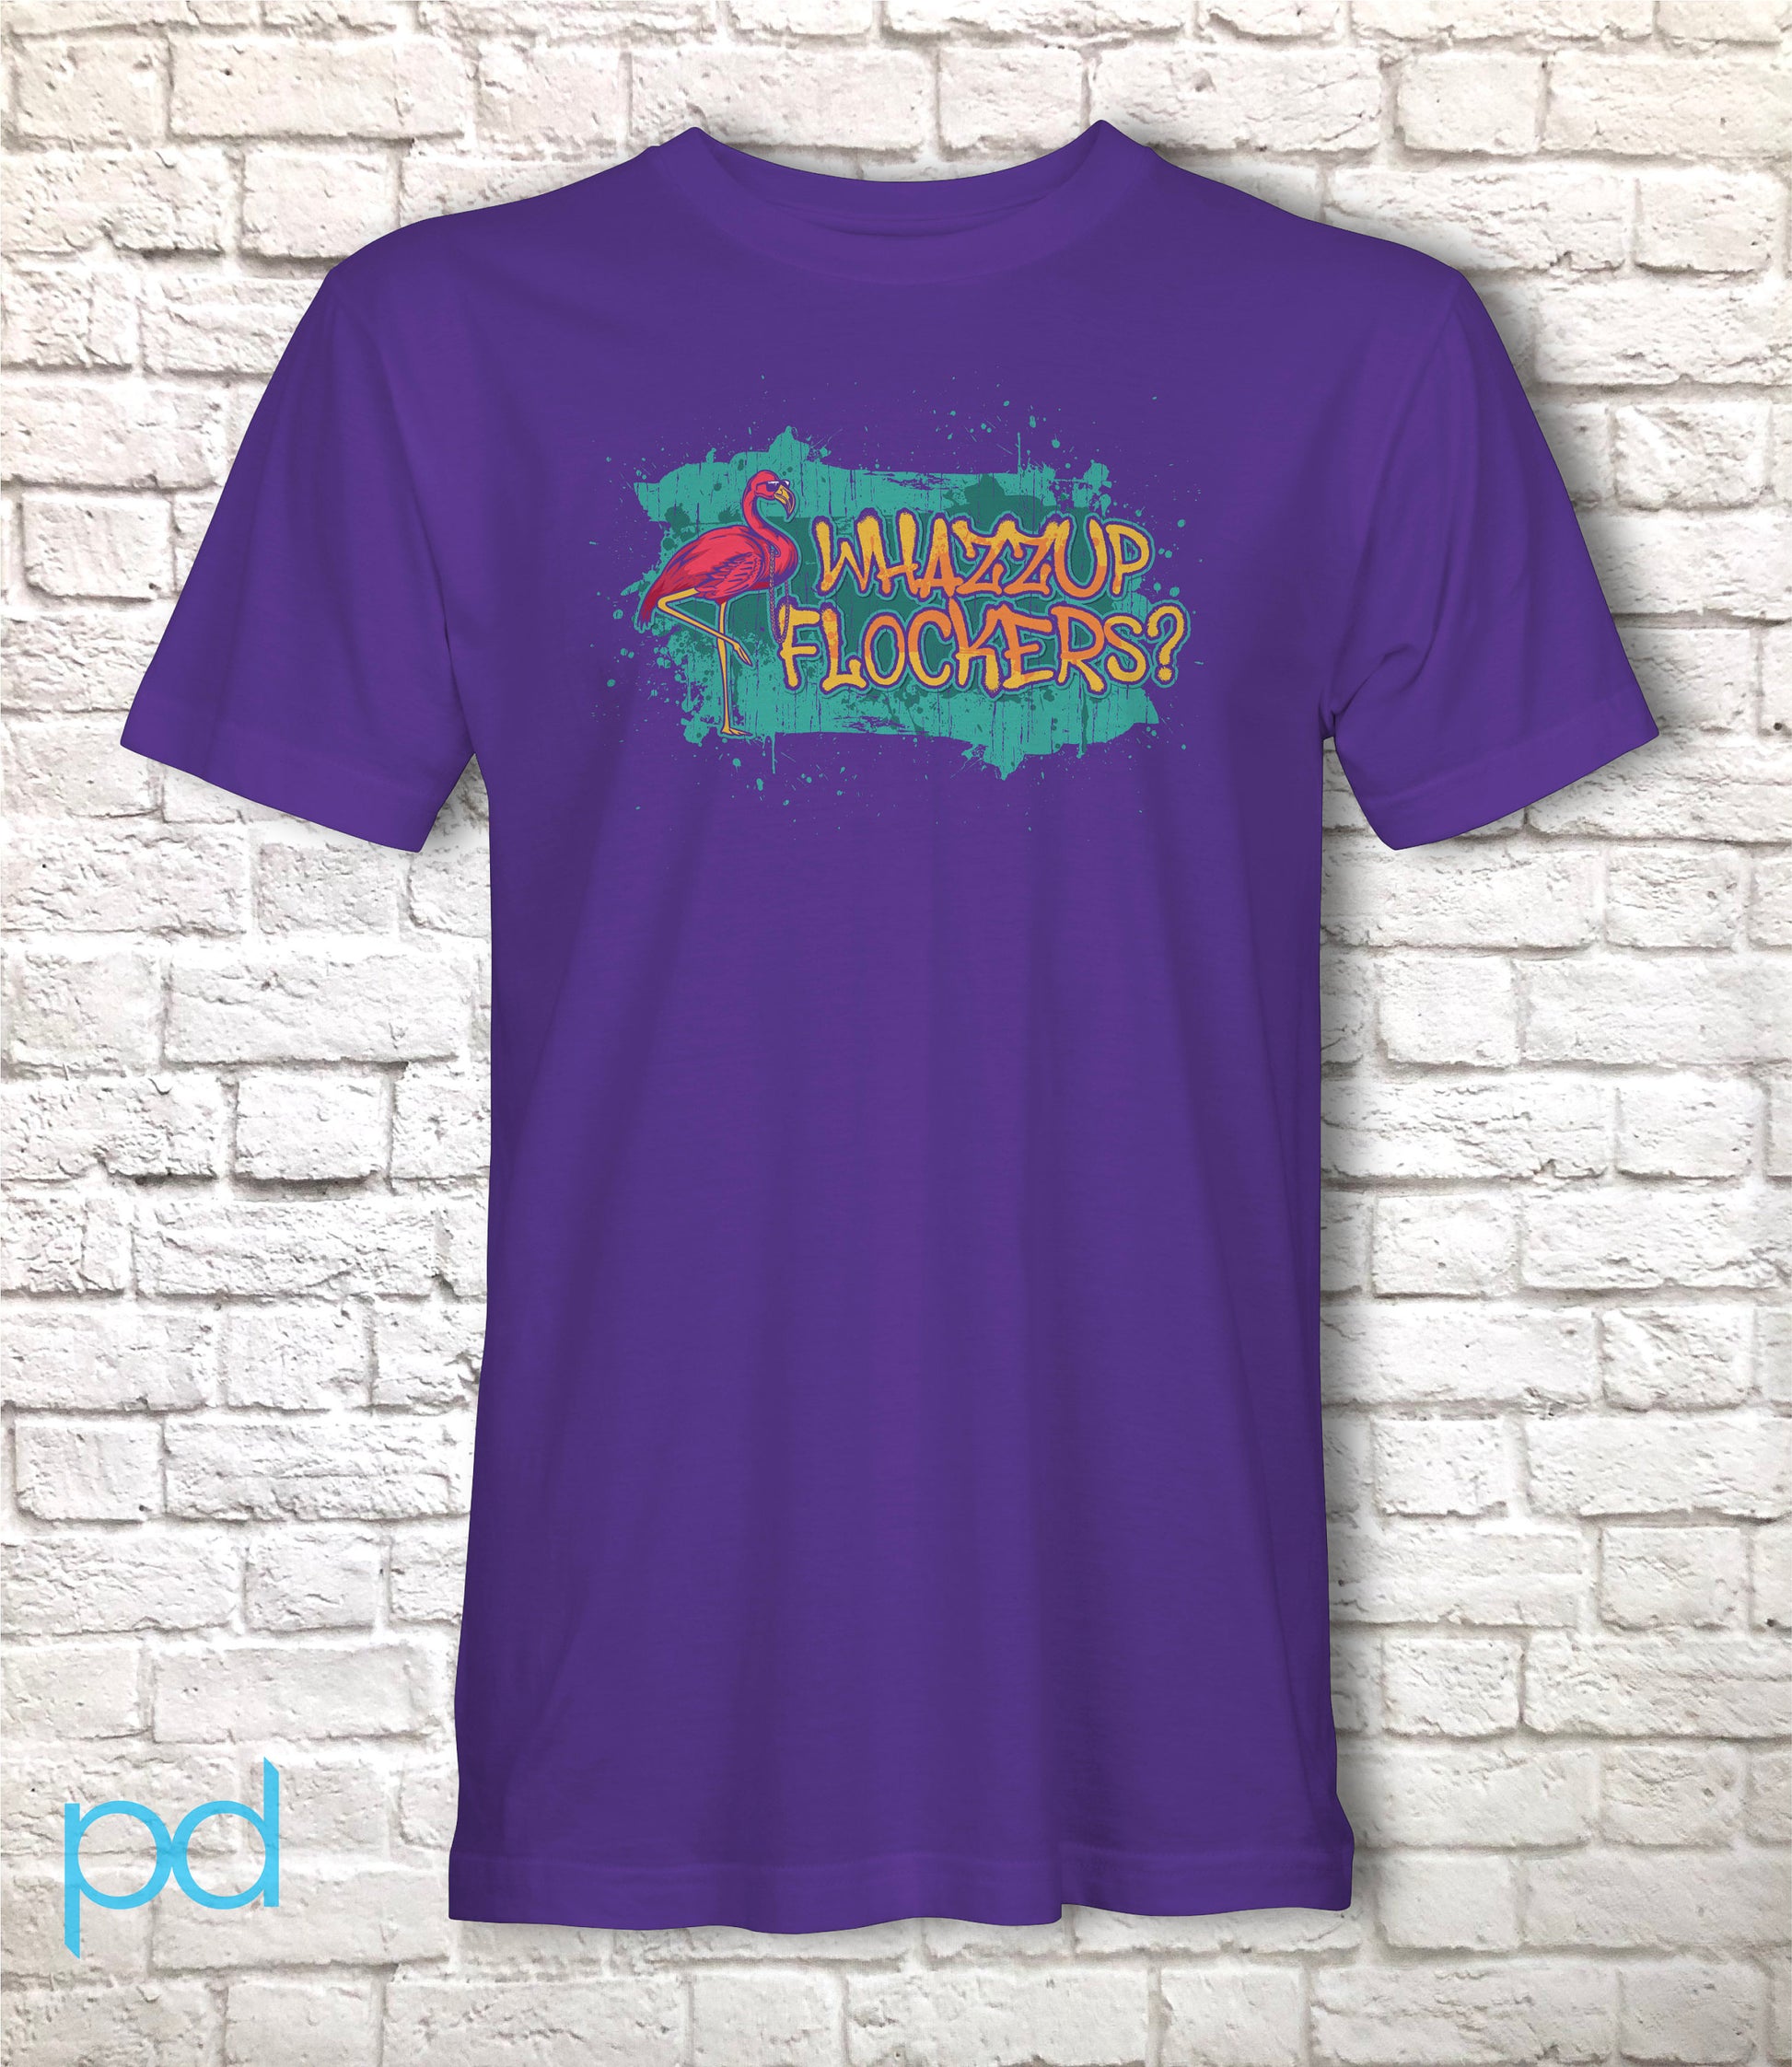 Flamingo Shirt for Flamingo Lovers T Shirt, Whazzup Flockers Pun T-Shirt Design Gift Idea Tee Shirt T Top